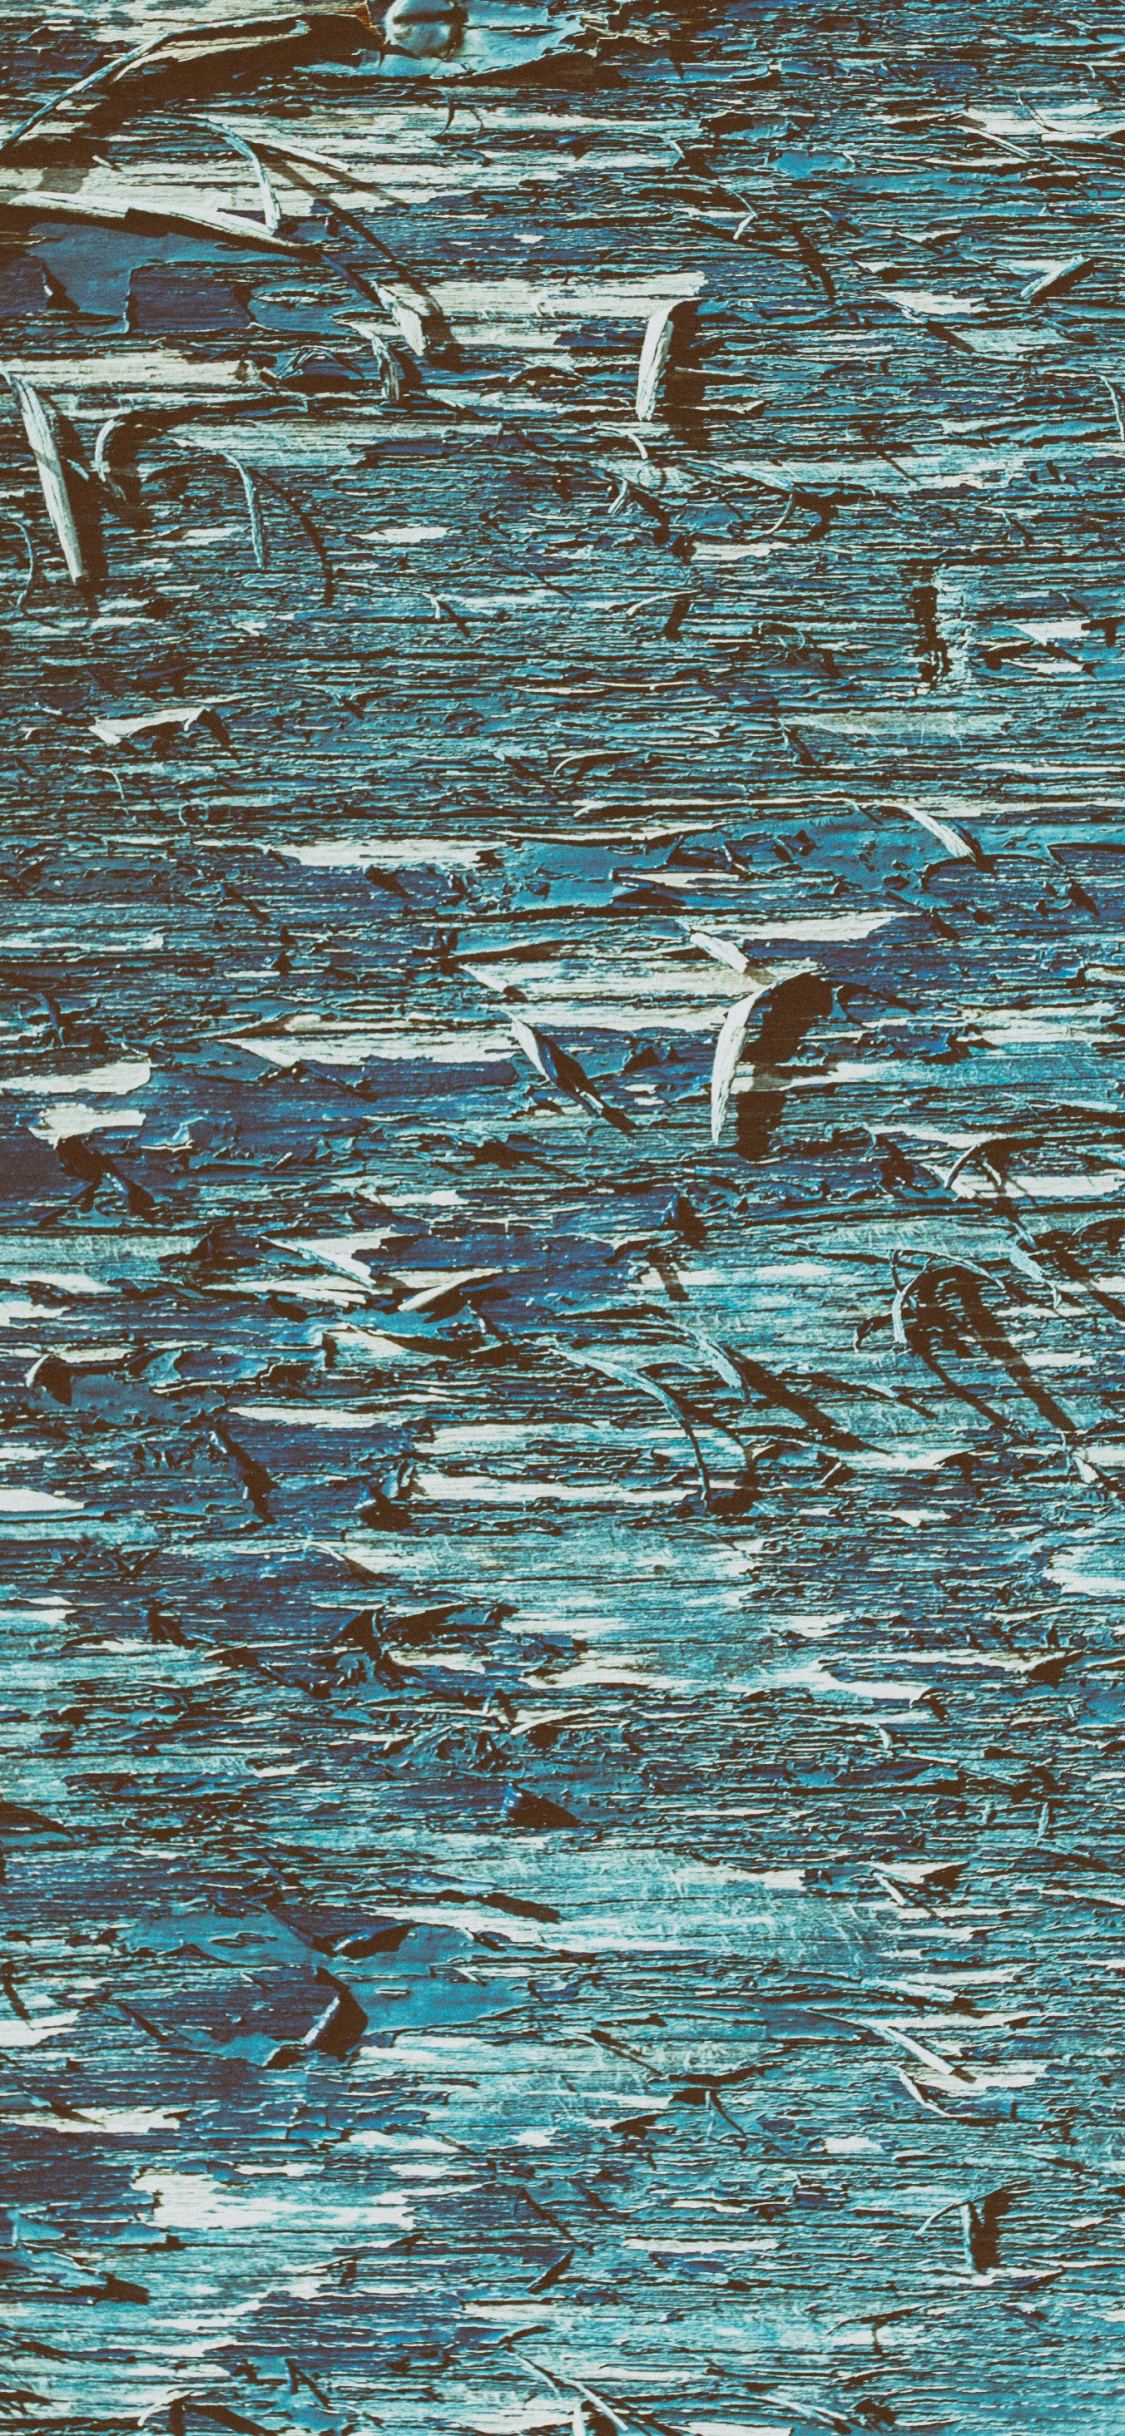 Oiseaux Blancs et Noirs Sur L'eau. Wallpaper in 1125x2436 Resolution